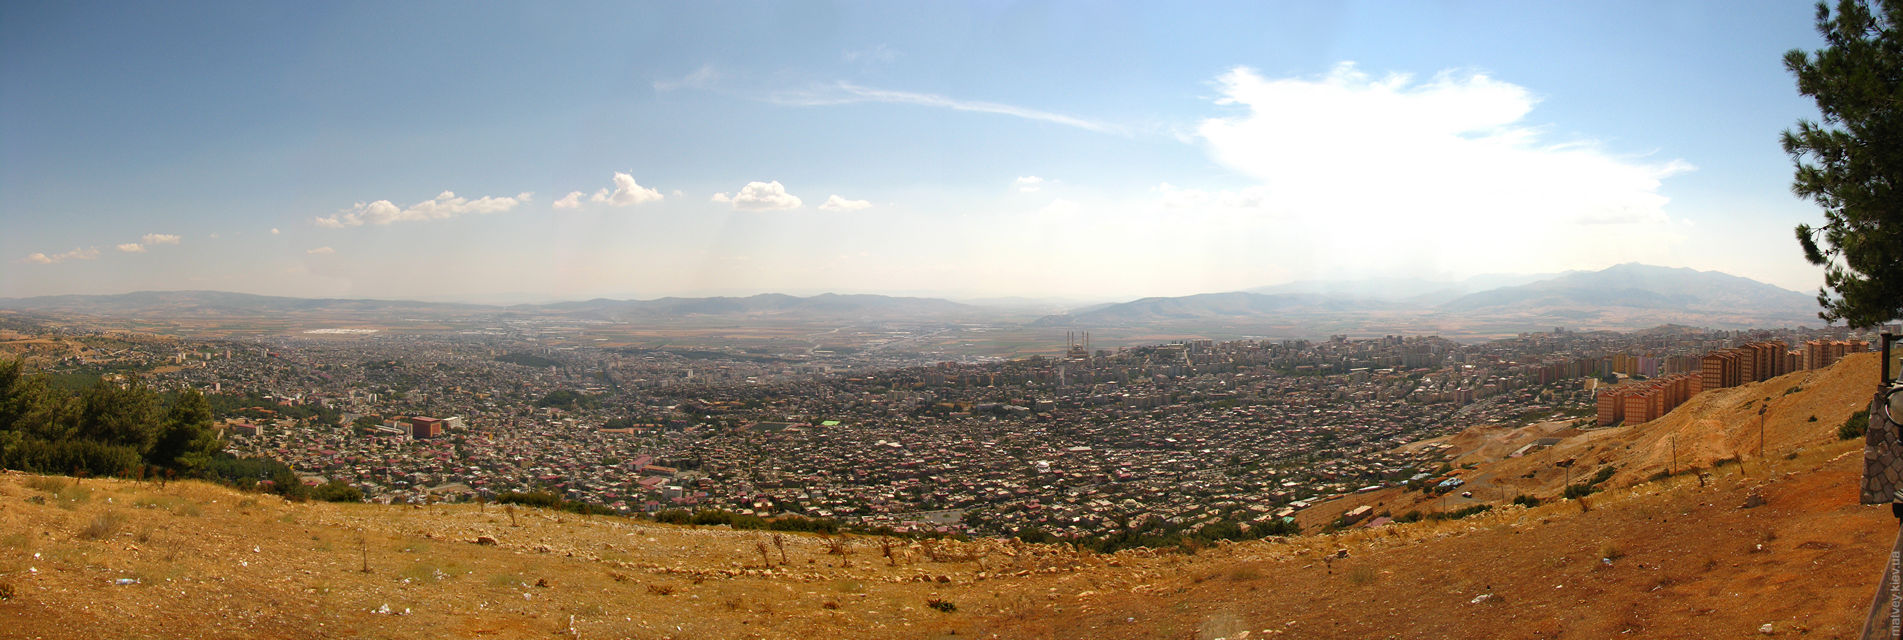 Вид на місто з кафе Teras на боці гори Ахир Даг. Кахраманмараш, Туреччина